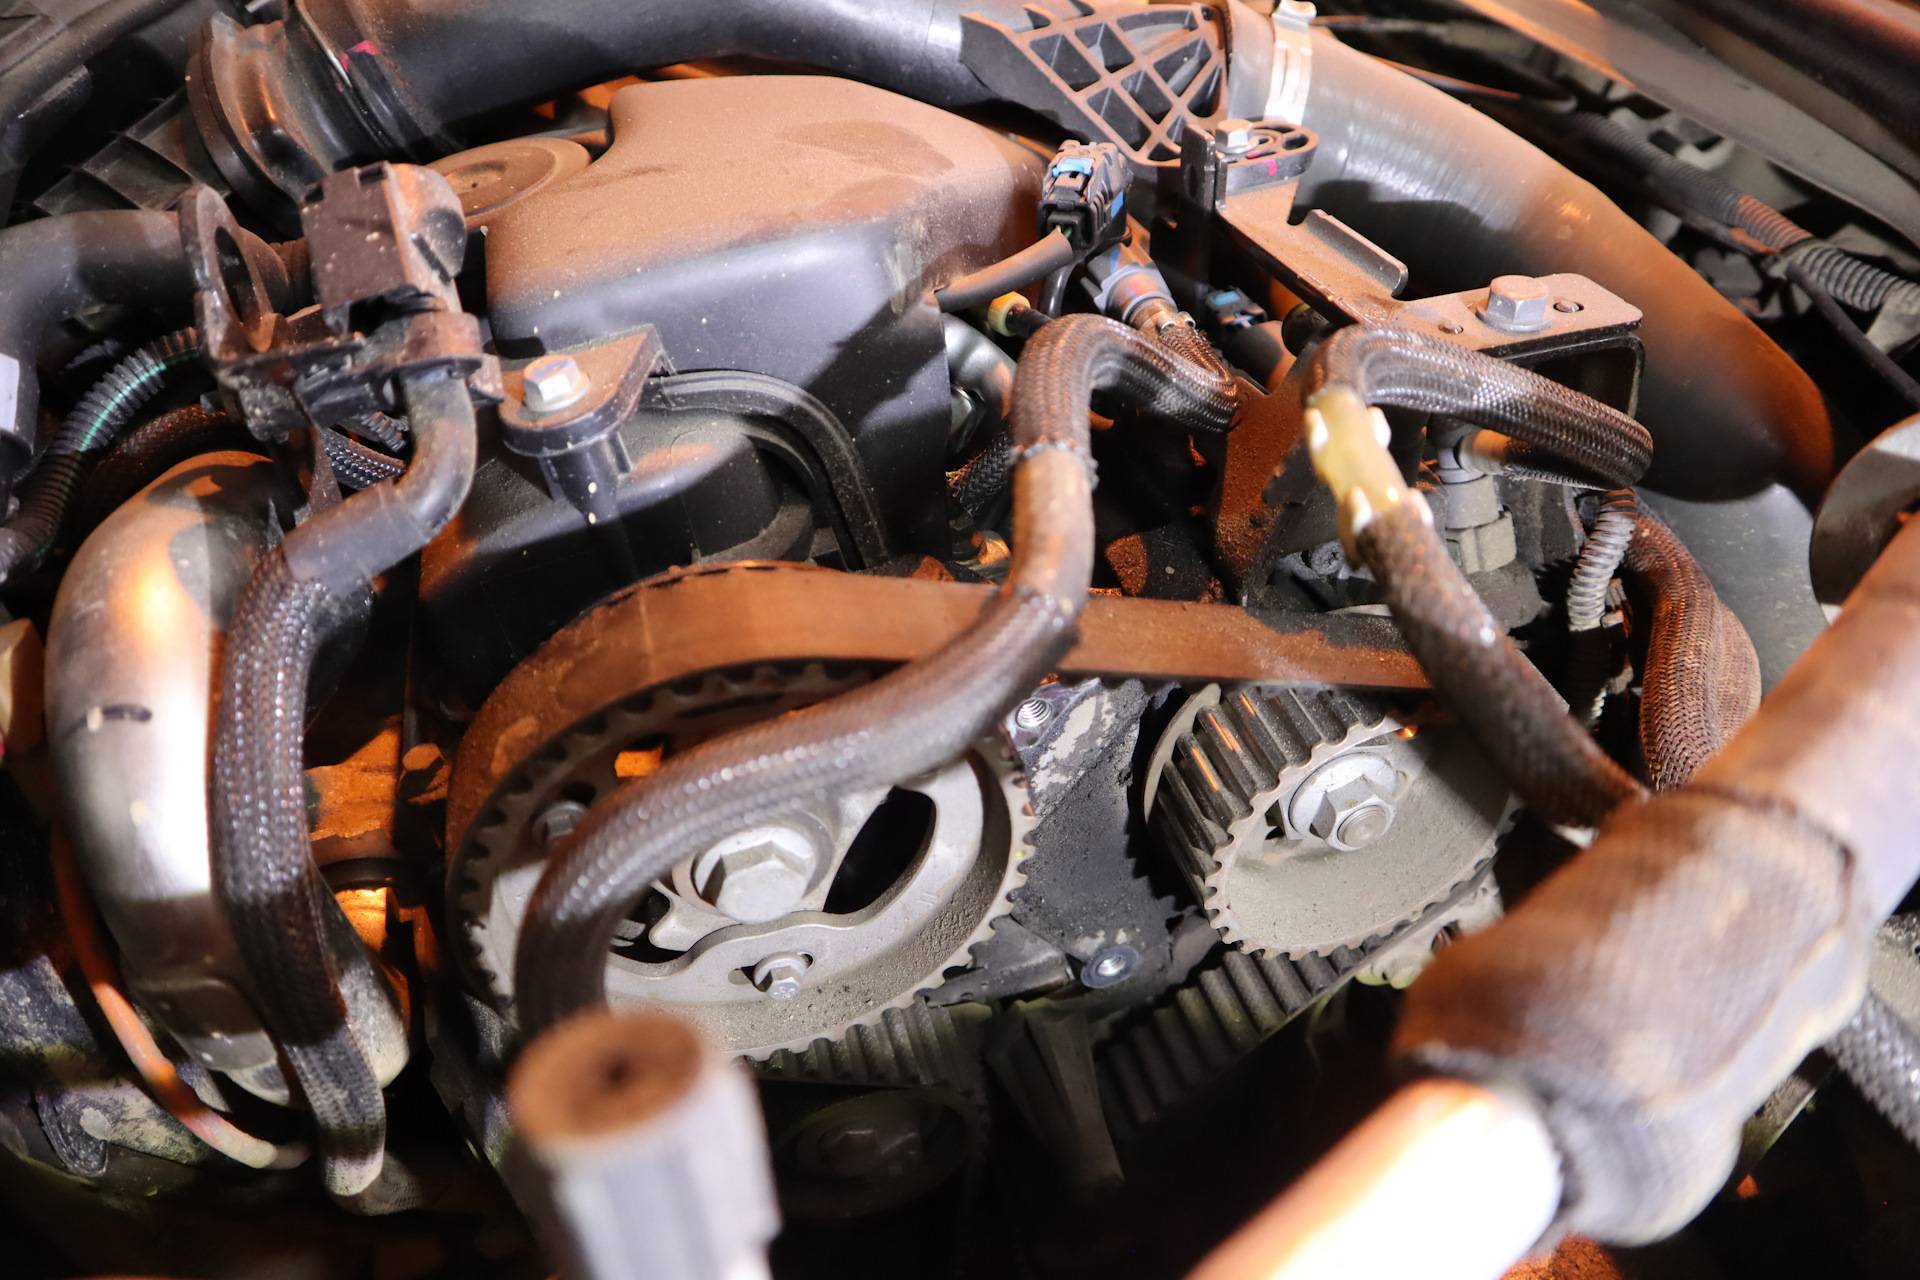 Renault duster двигатель 2.0 замена ремня привода дополнительных агрегатов